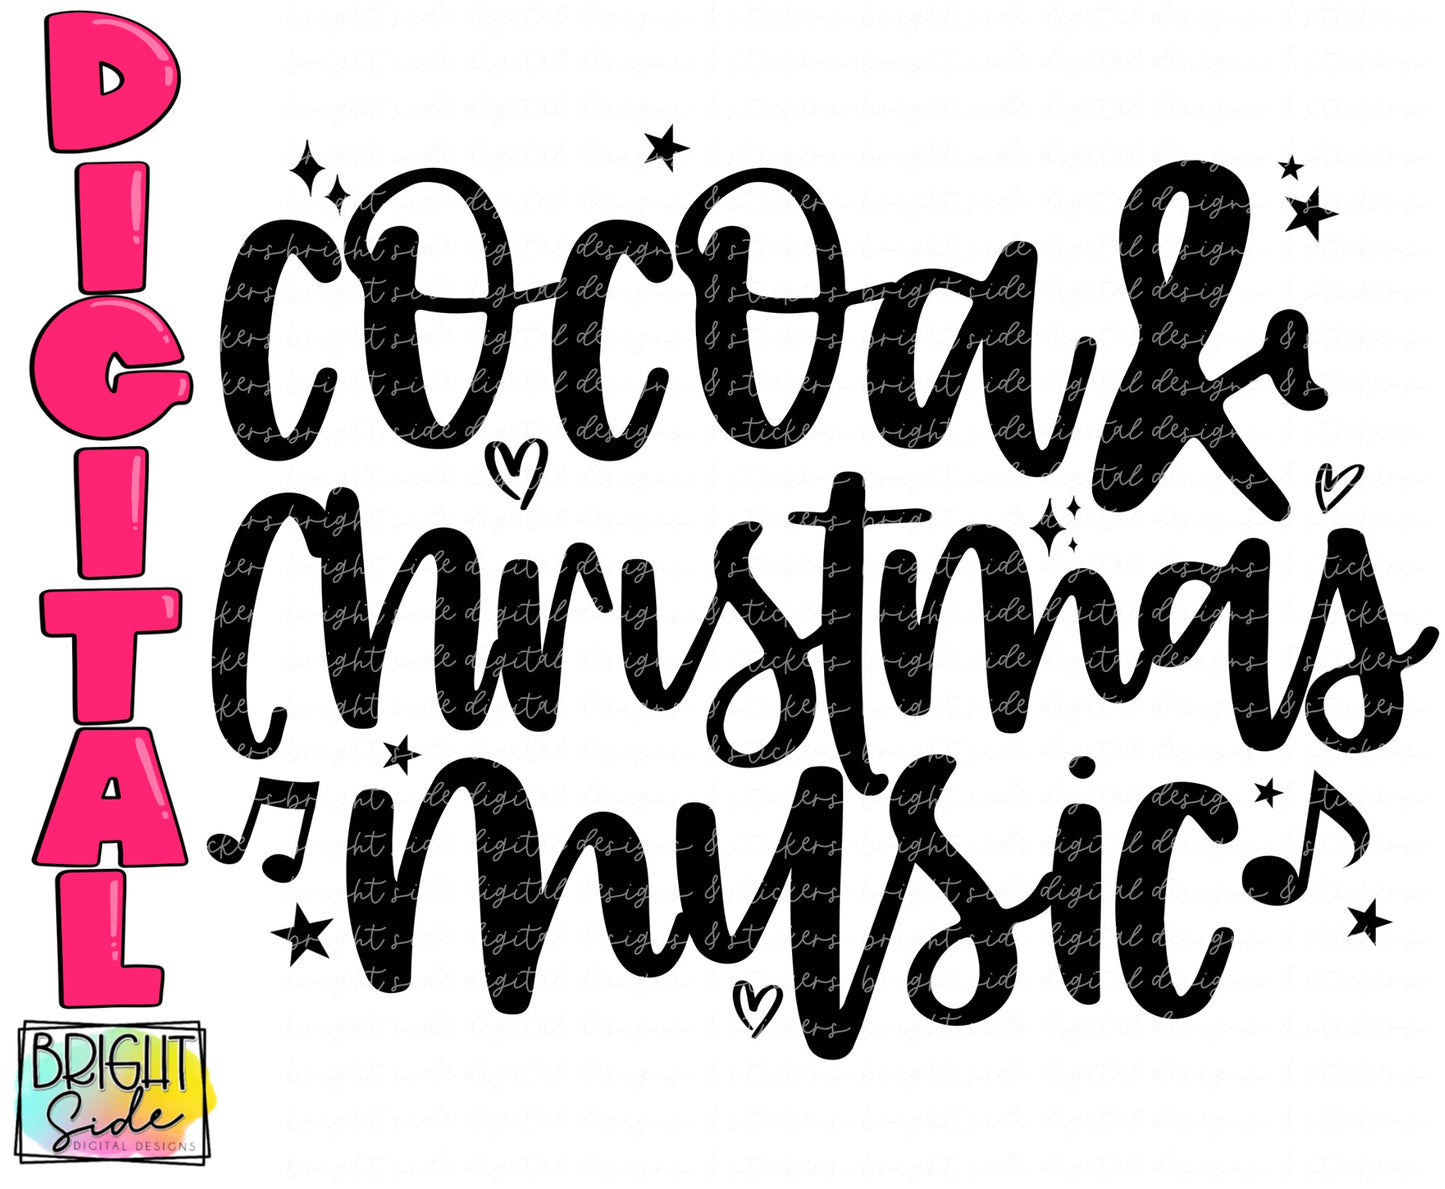 Cocoa & Christmas music